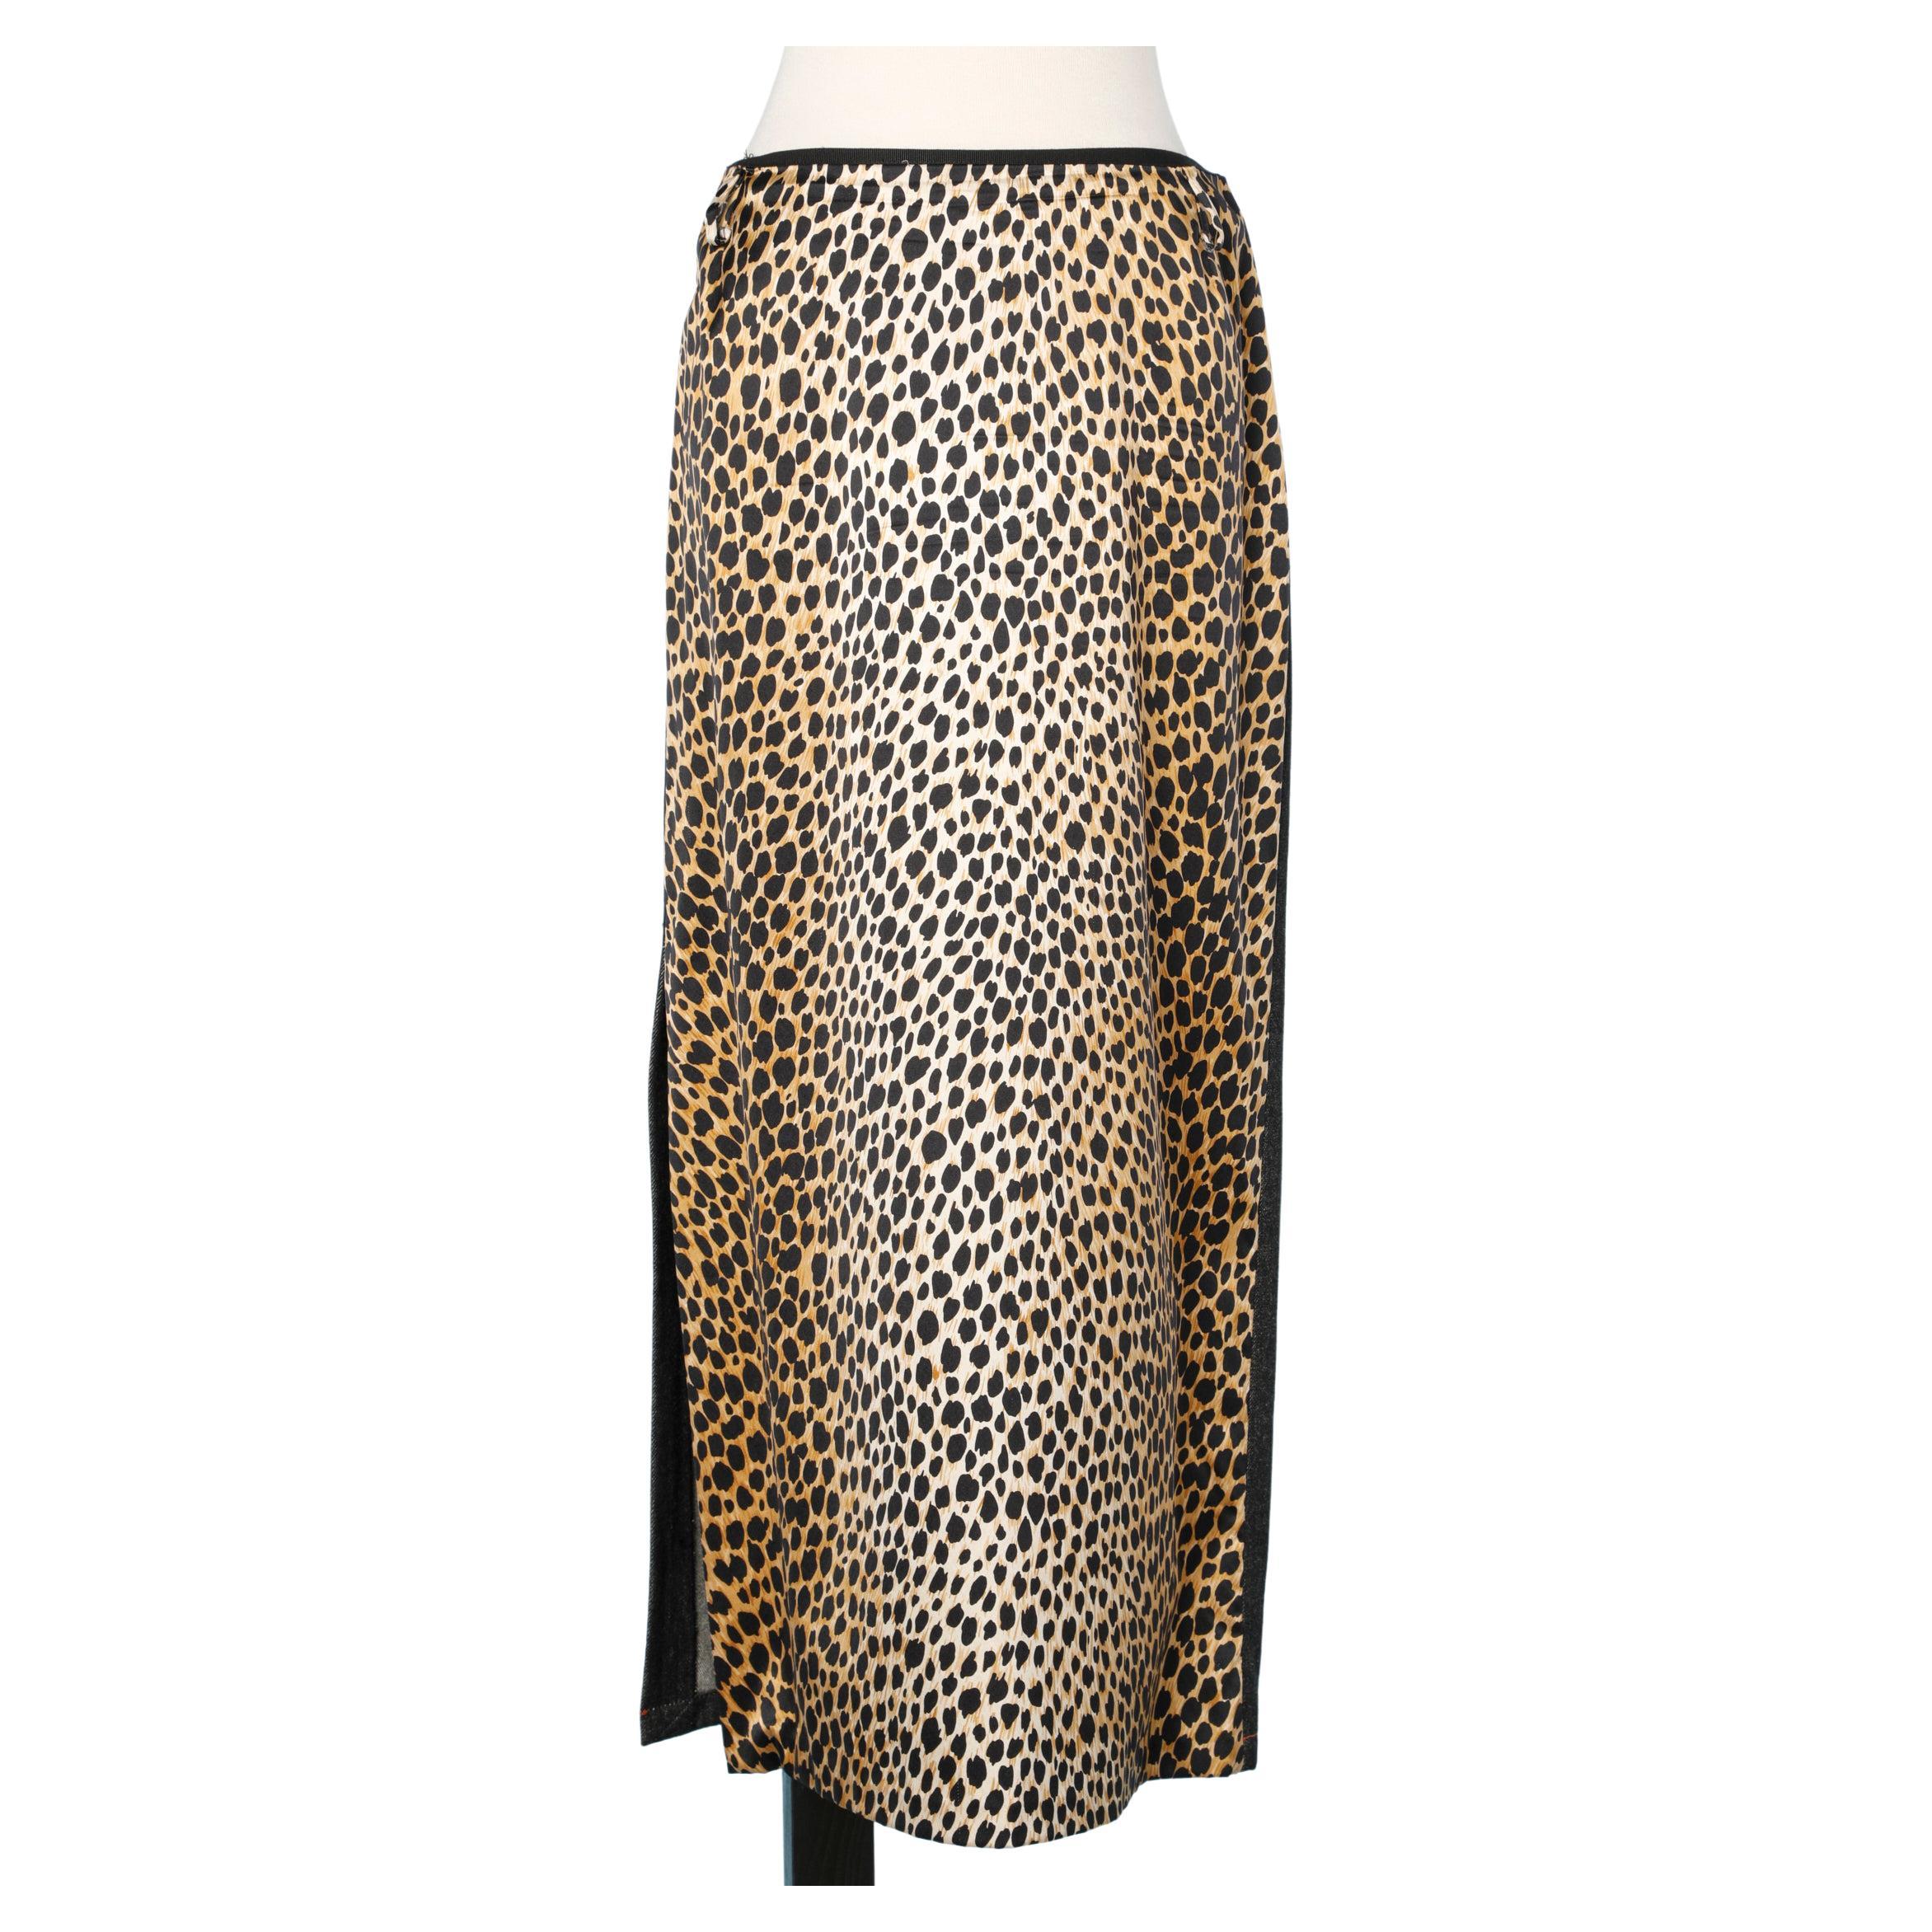 Dolce & Gabbana skirt half denim half leopard printed jersey with side slit For Sale